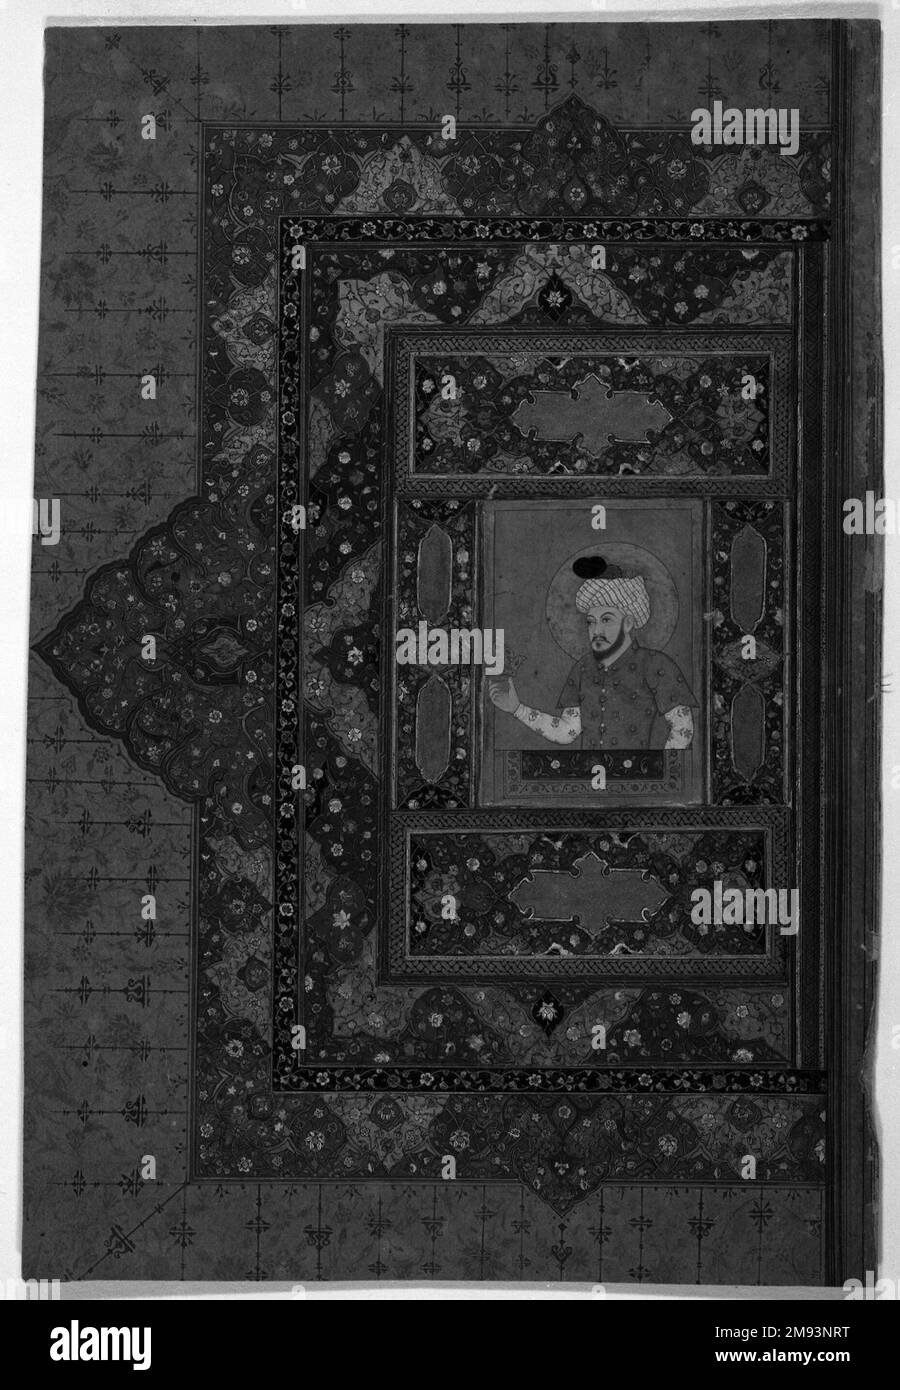 Pagina illuminata Haidarabad Telinganeh (Golkonda). Pagina illuminata, 17th ° secolo. Acquerello e oro su carta, 7 5/8 x 4 1/8in. (19,4 x 10,5cm). Arte asiatica 17th ° secolo Foto Stock